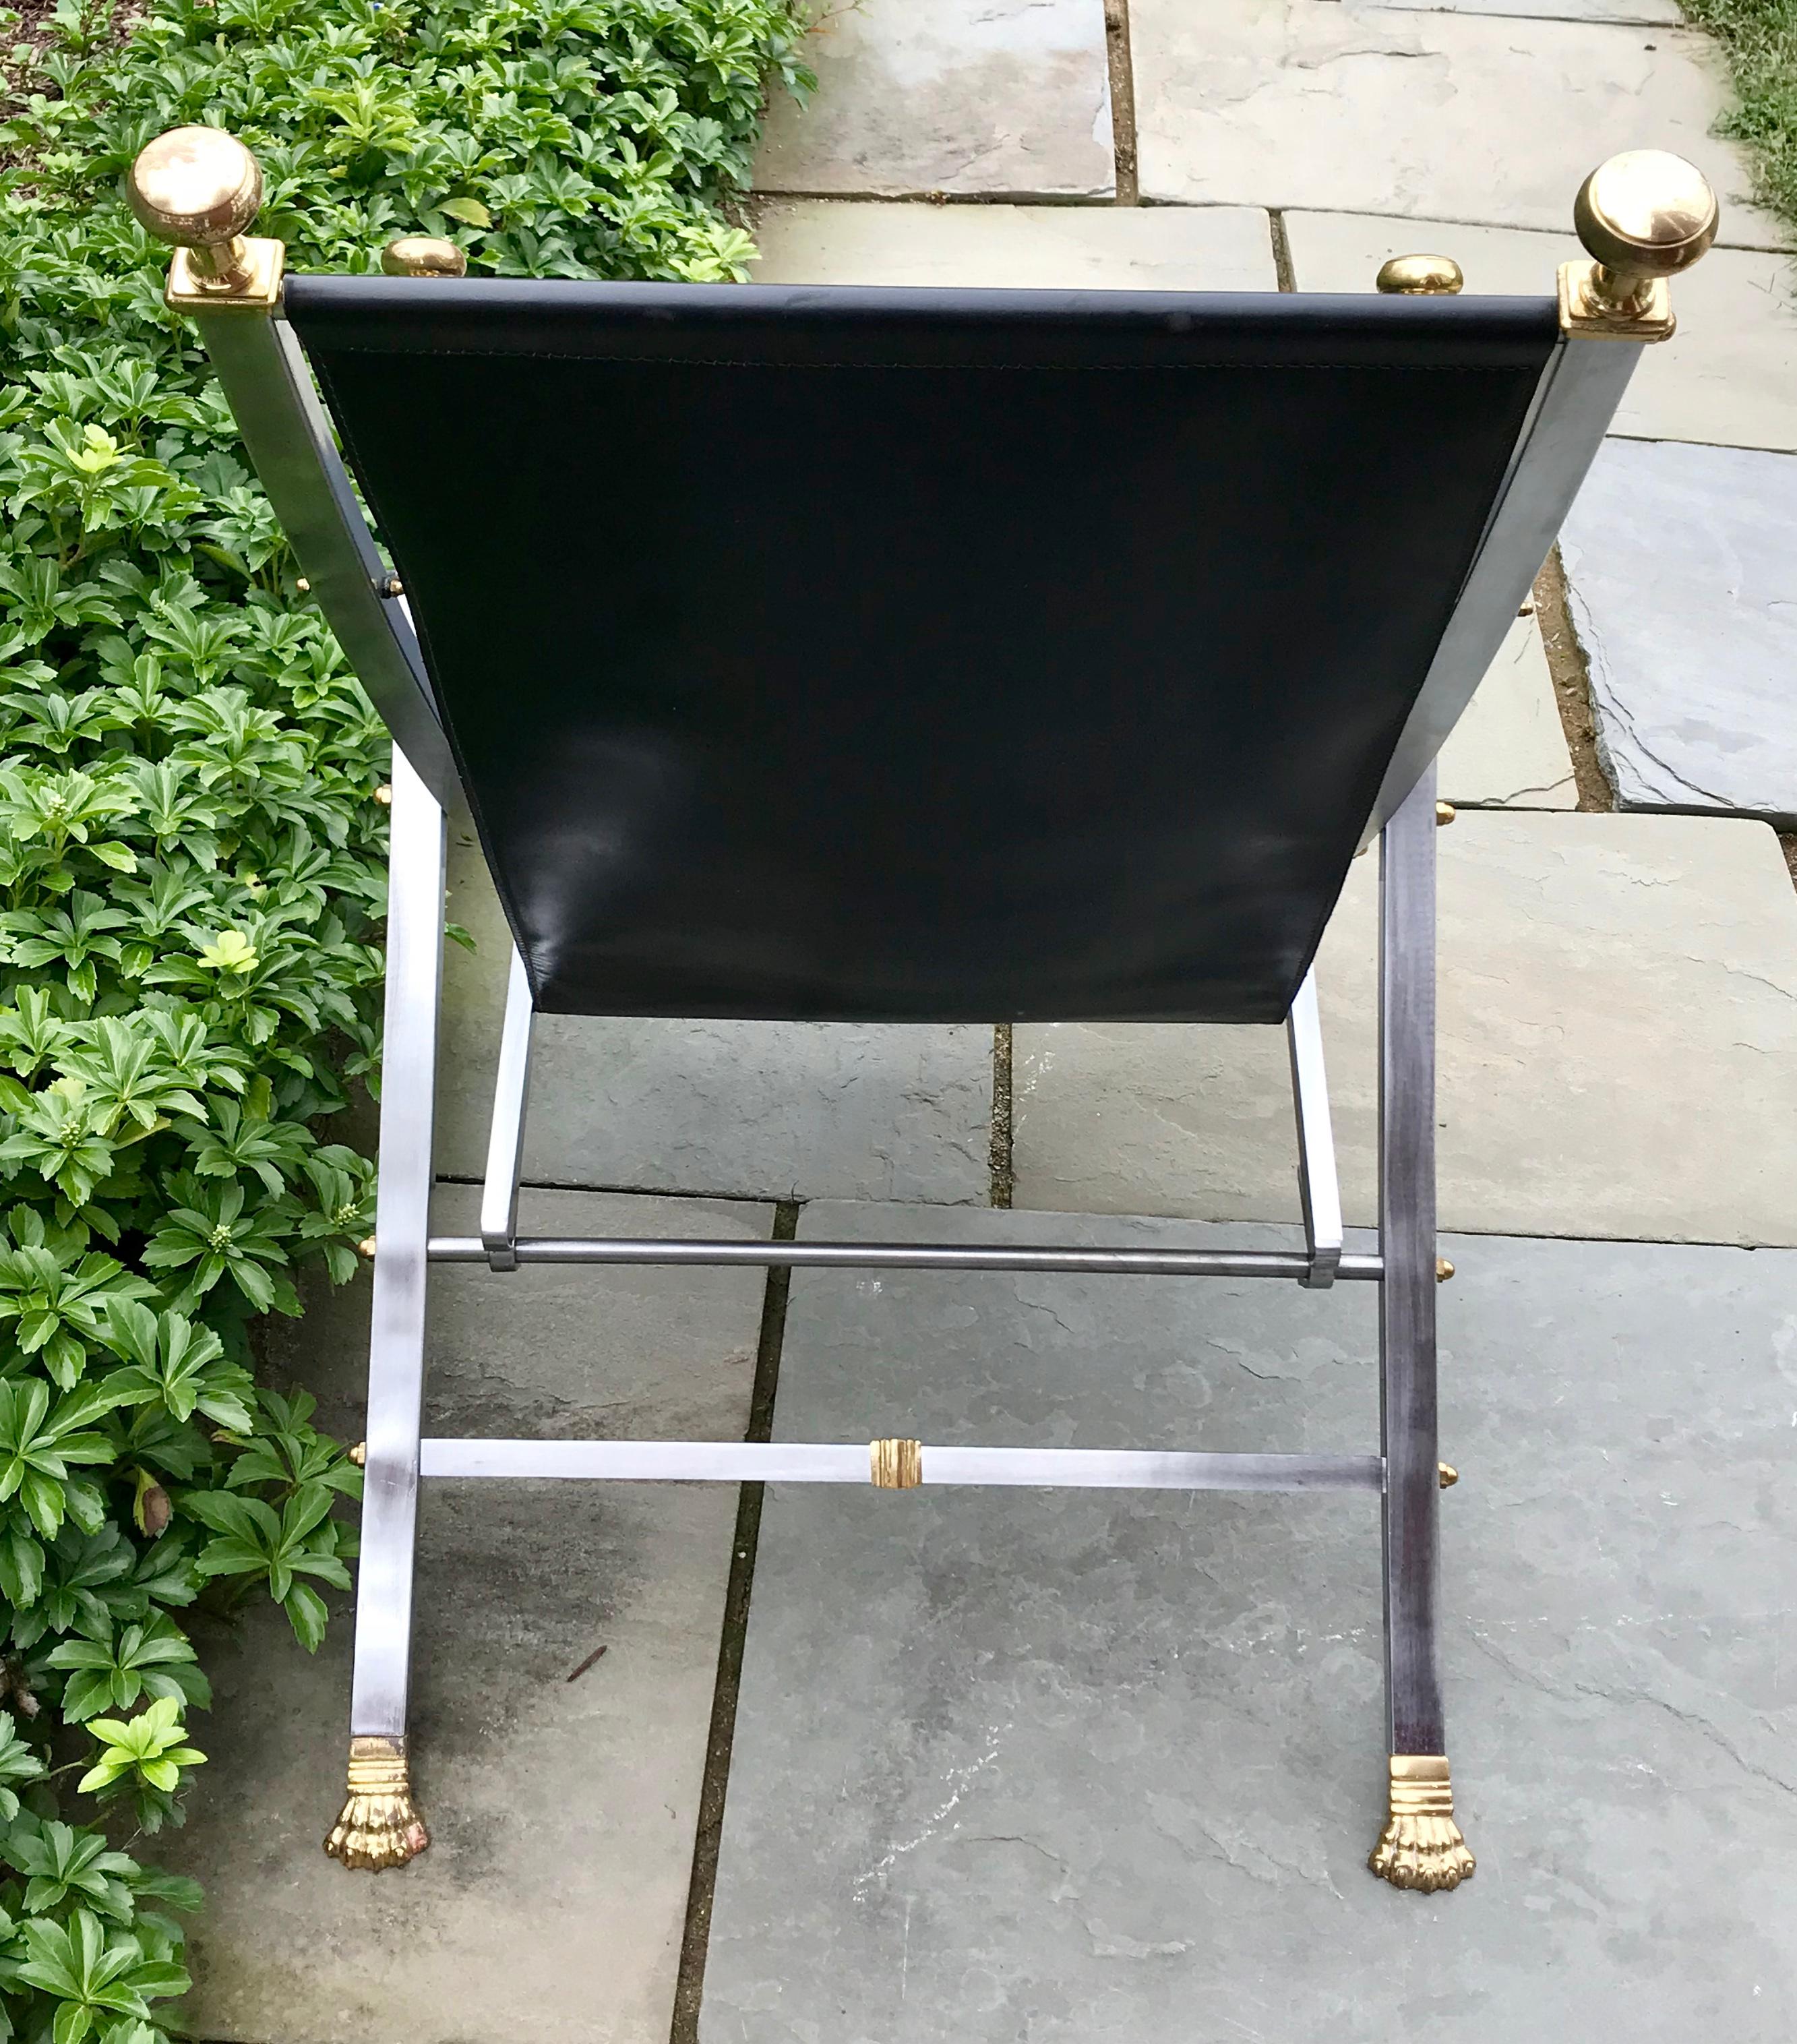 Schöner Campaigner-Stuhl aus Leder von Maison Jansen, massiver Stahl mit Messingknäufen, 1960er Jahre.